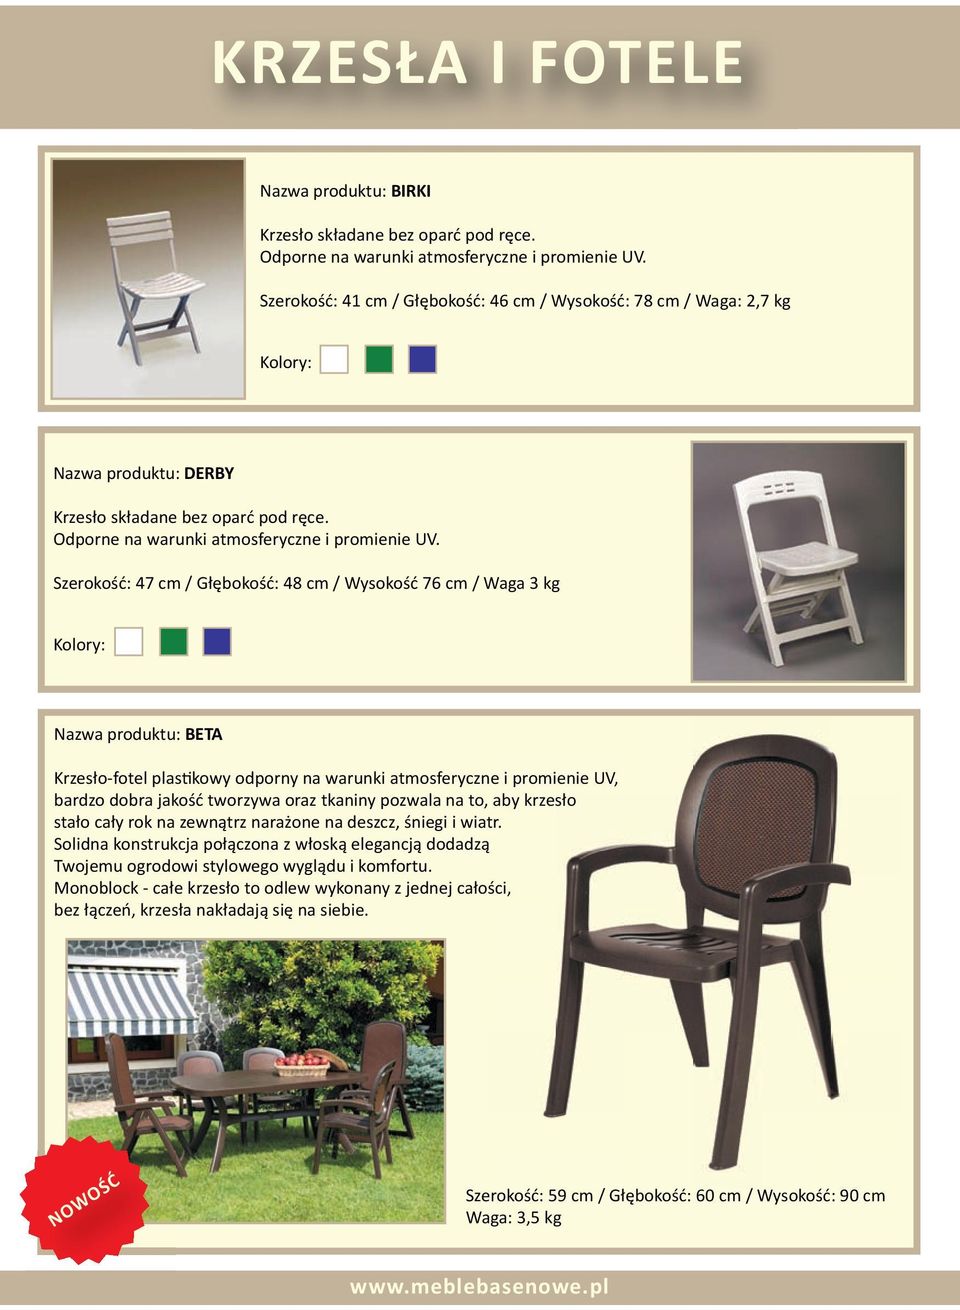 Szerokość: 47 cm / Głębokość: 48 cm / Wysokość 76 cm / Waga 3 kg Nazwa produktu: BETA Krzesło-fotel plastikowy odporny na warunki atmosferyczne i promienie UV, bardzo dobra jakość tworzywa oraz